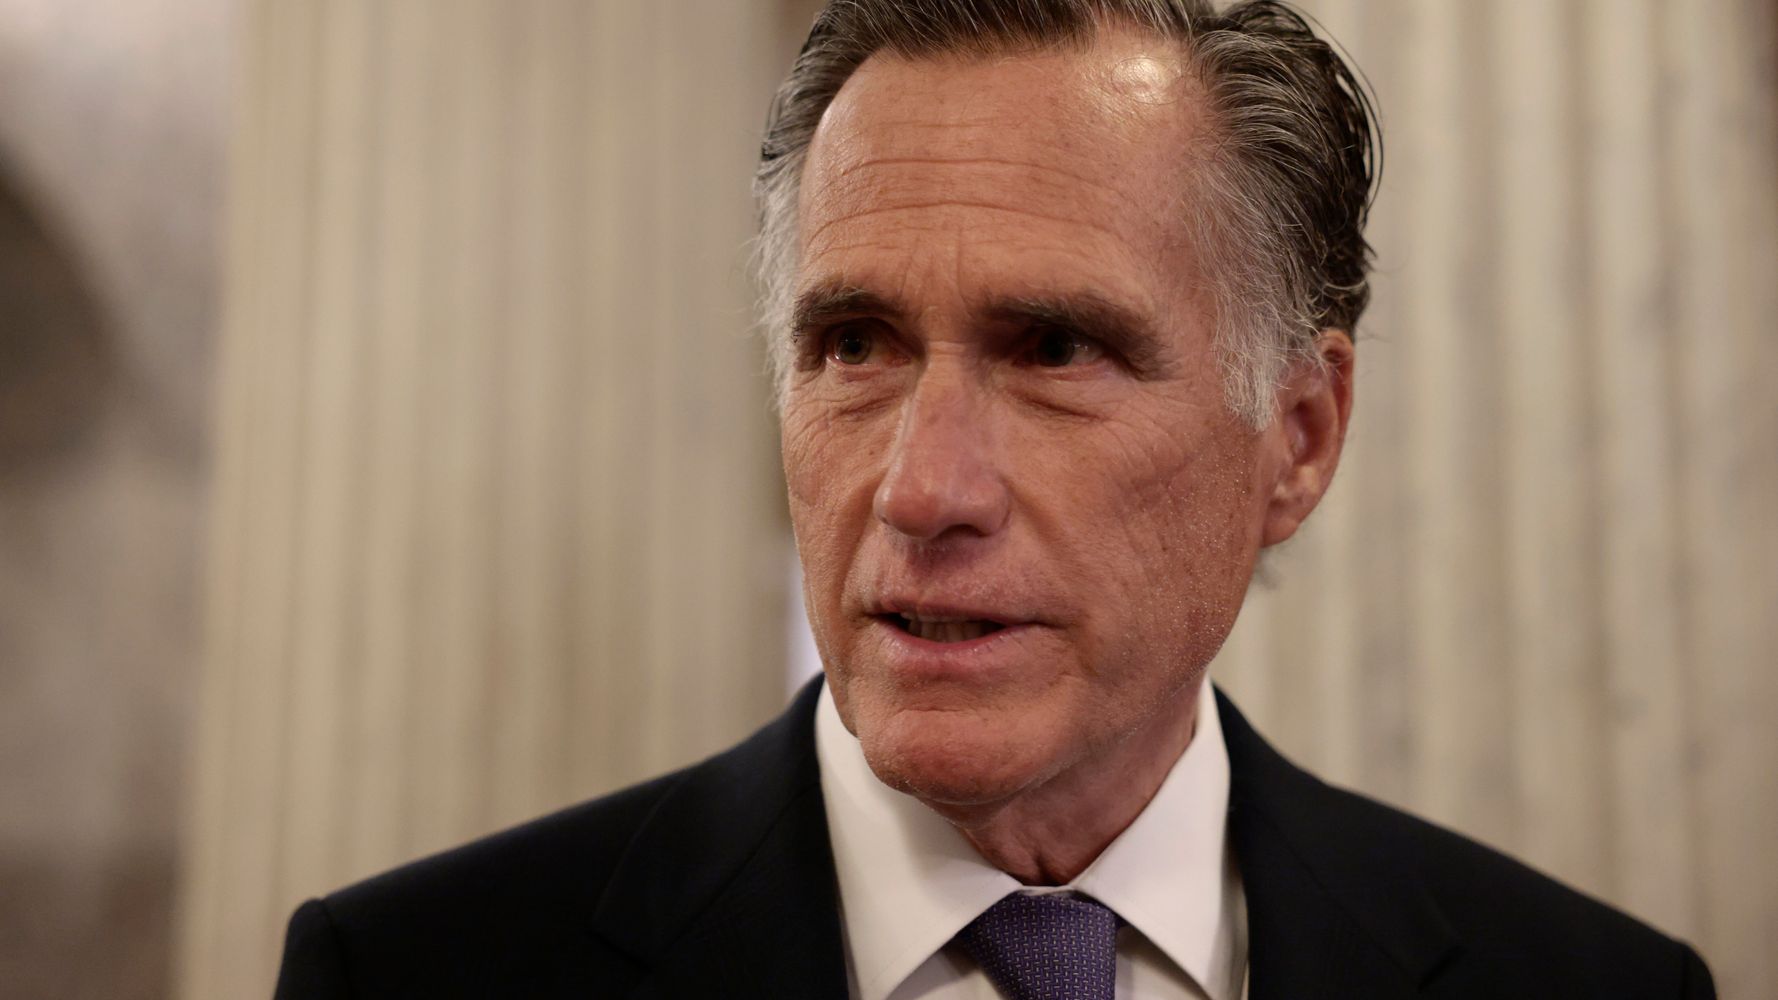 Mitt Romney dice que Joe Biden está 'poniendo en duda' las elecciones, al igual que Donald Trump